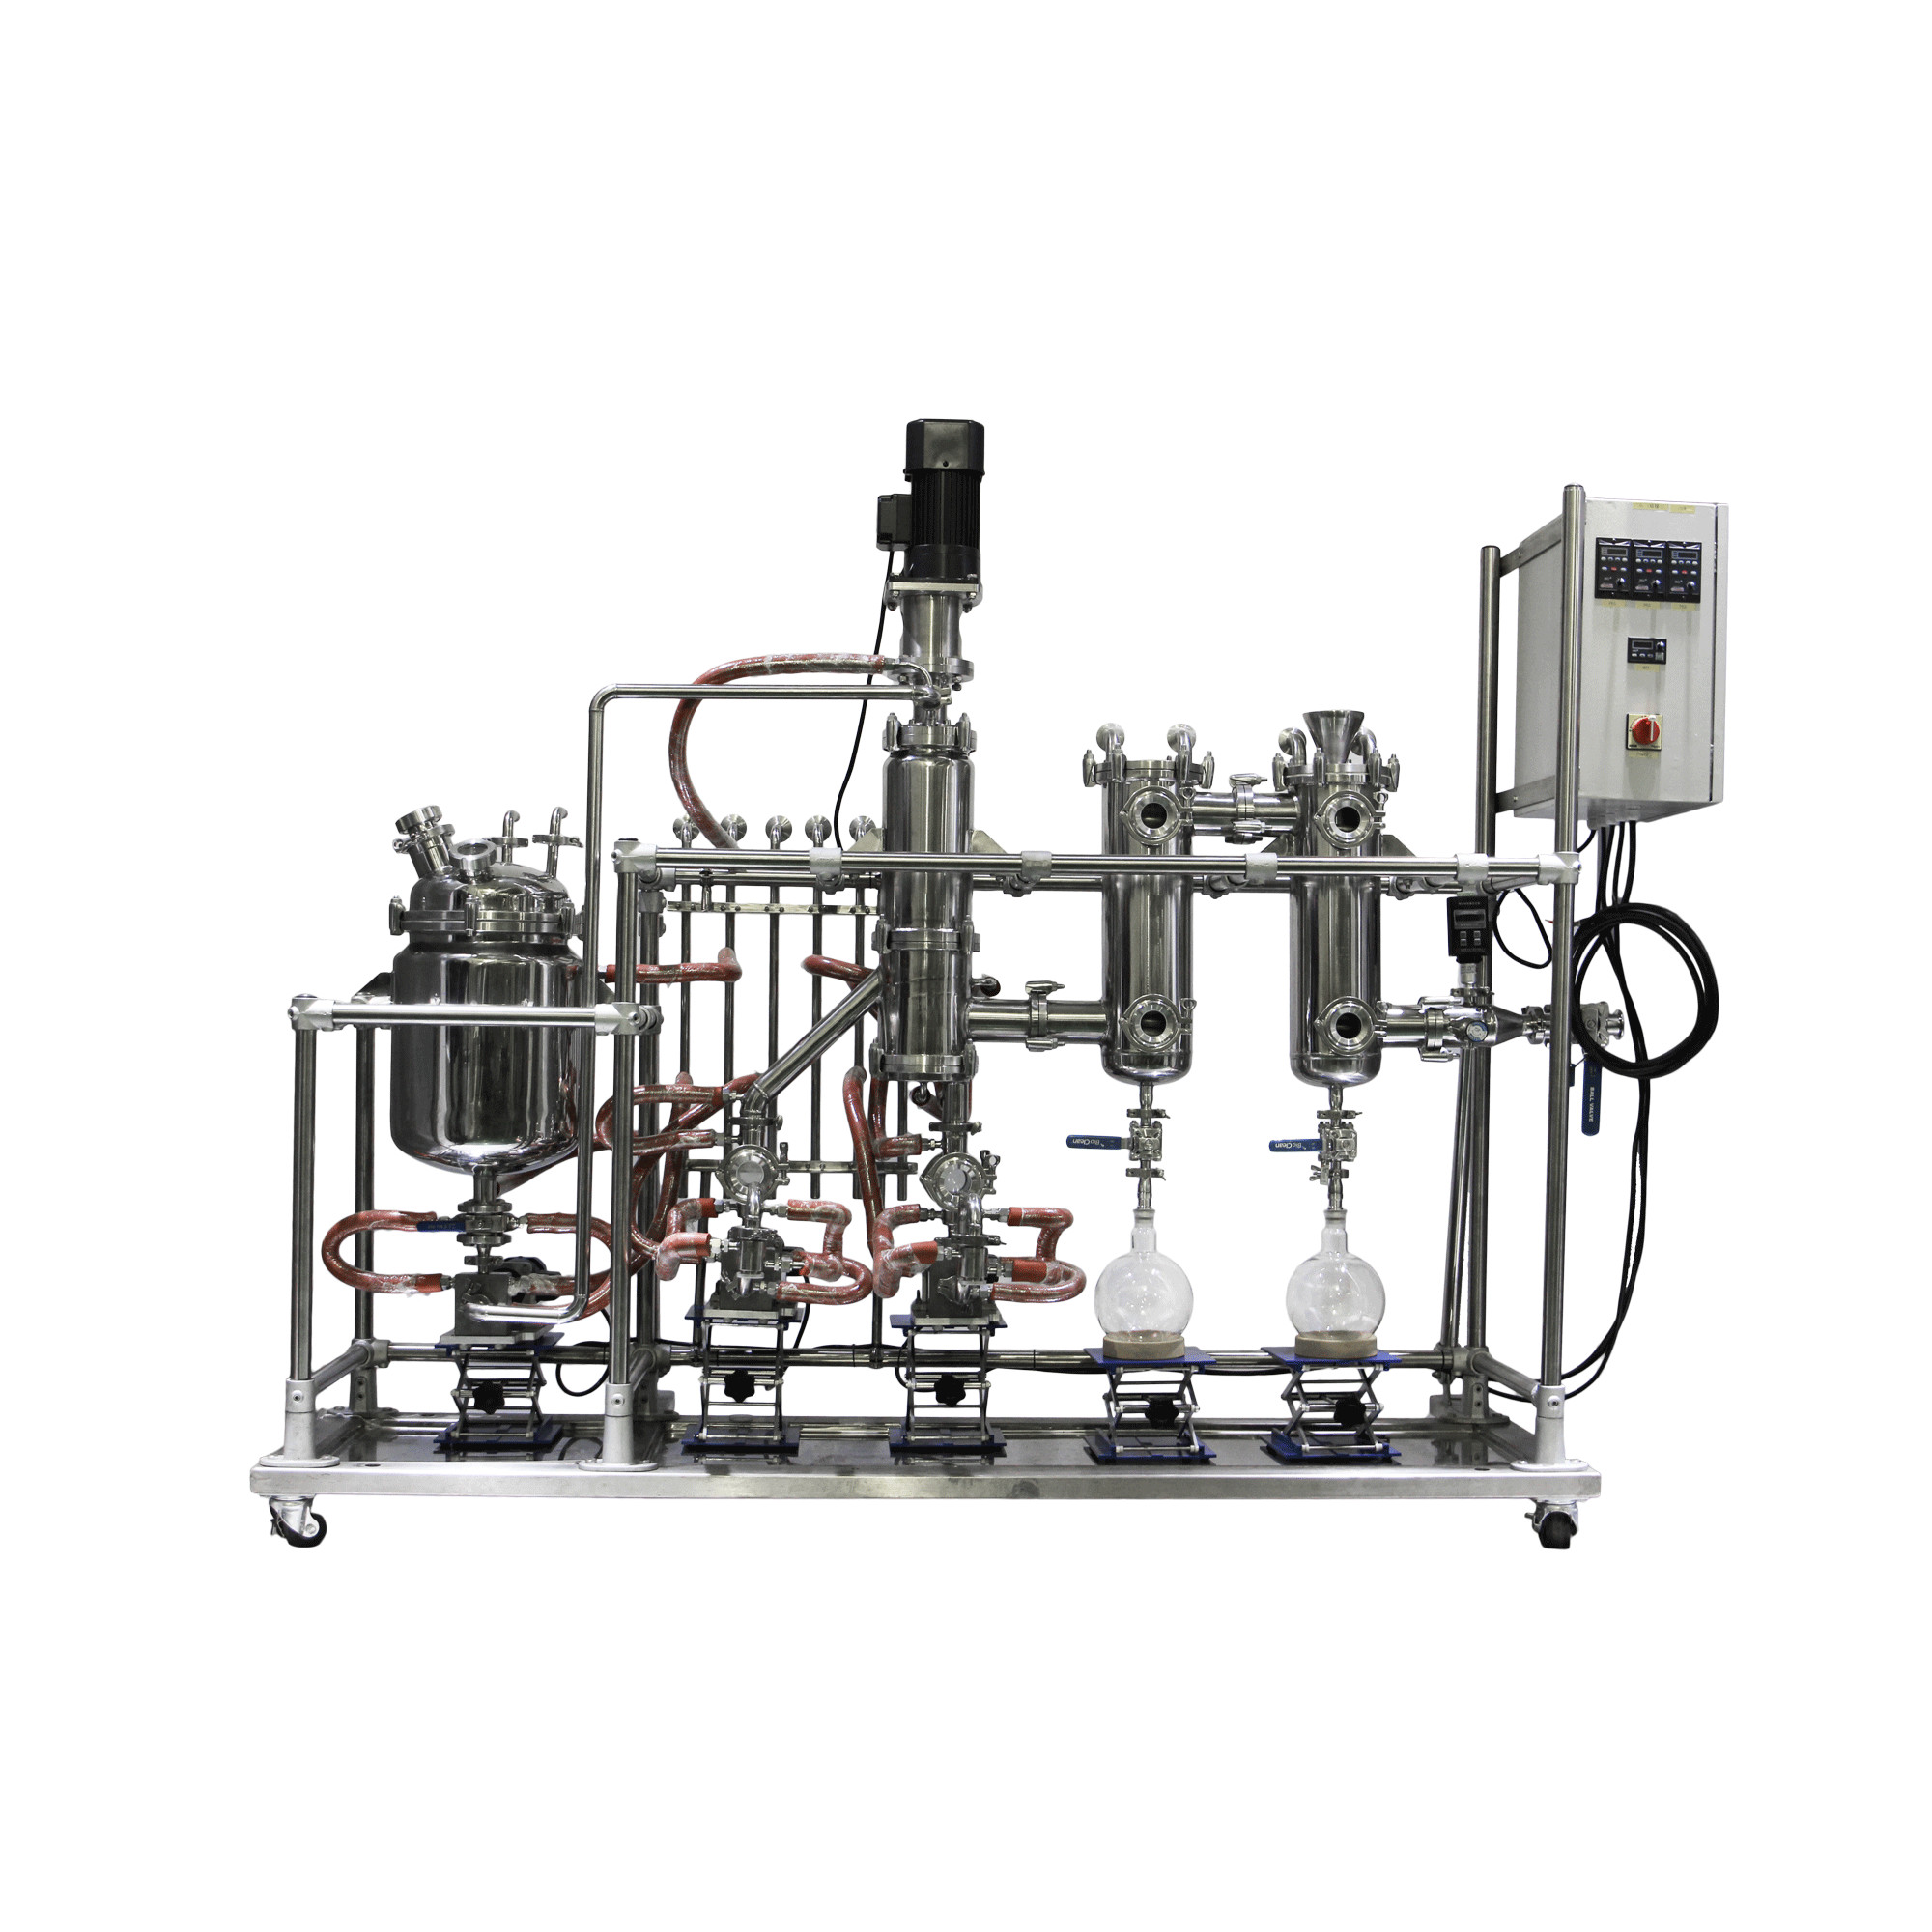 Wipe Film Distillation Euiqpment Essential Oil Steam Distillation Apparatus High Vacuum Pressure